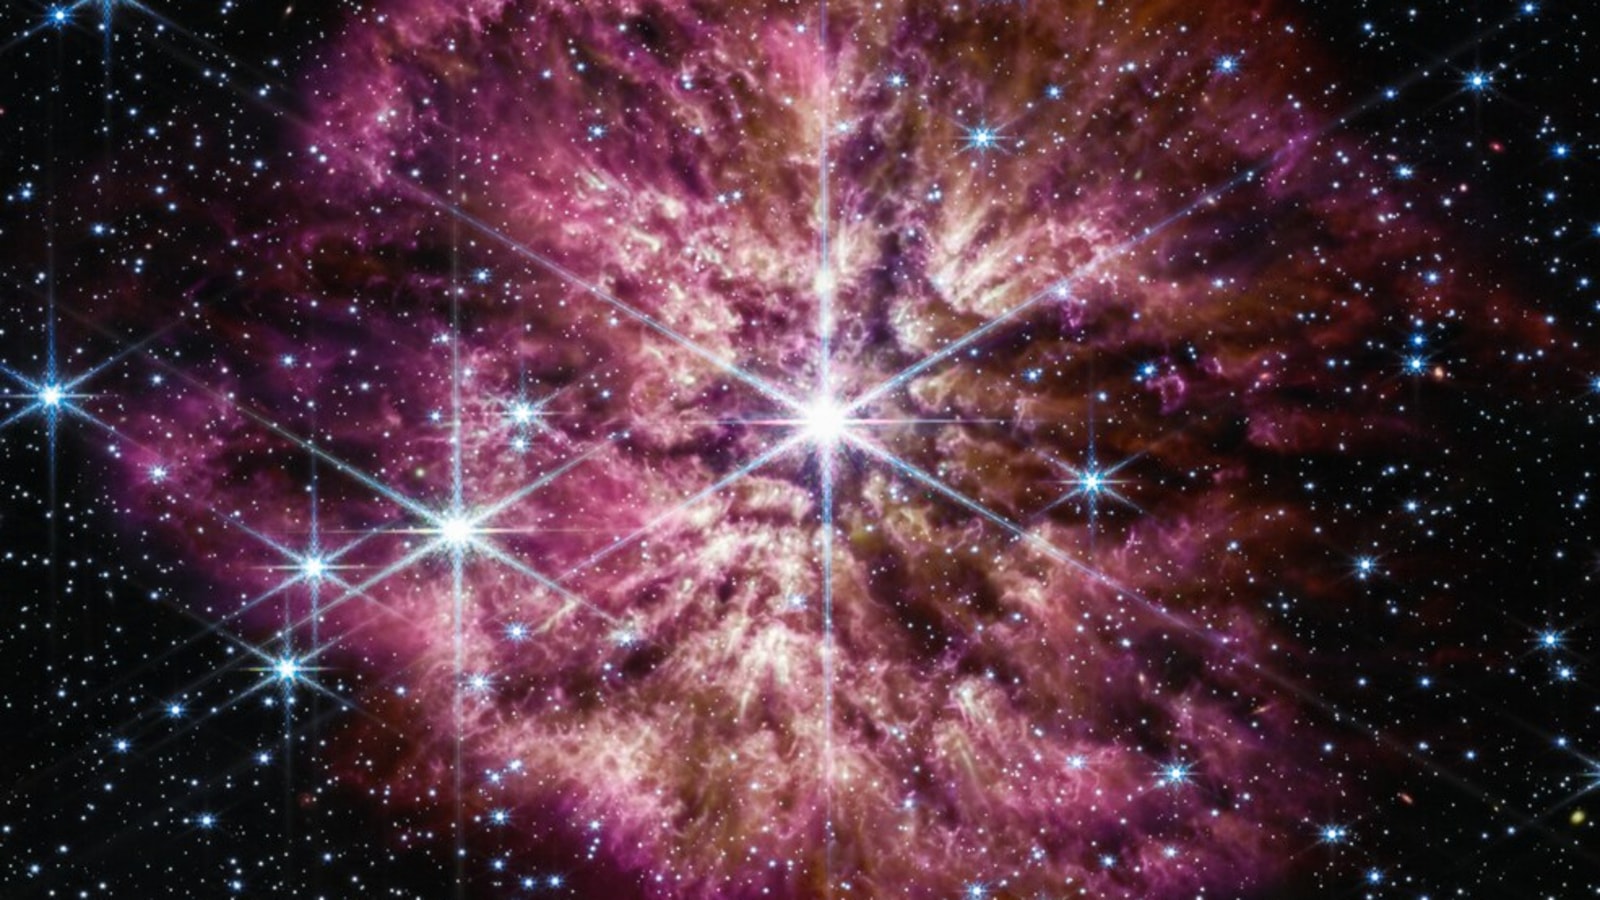 verrassend!  NASA’s James Webb Space Telescope legt een zeldzame aanblik vast van een stervende ster